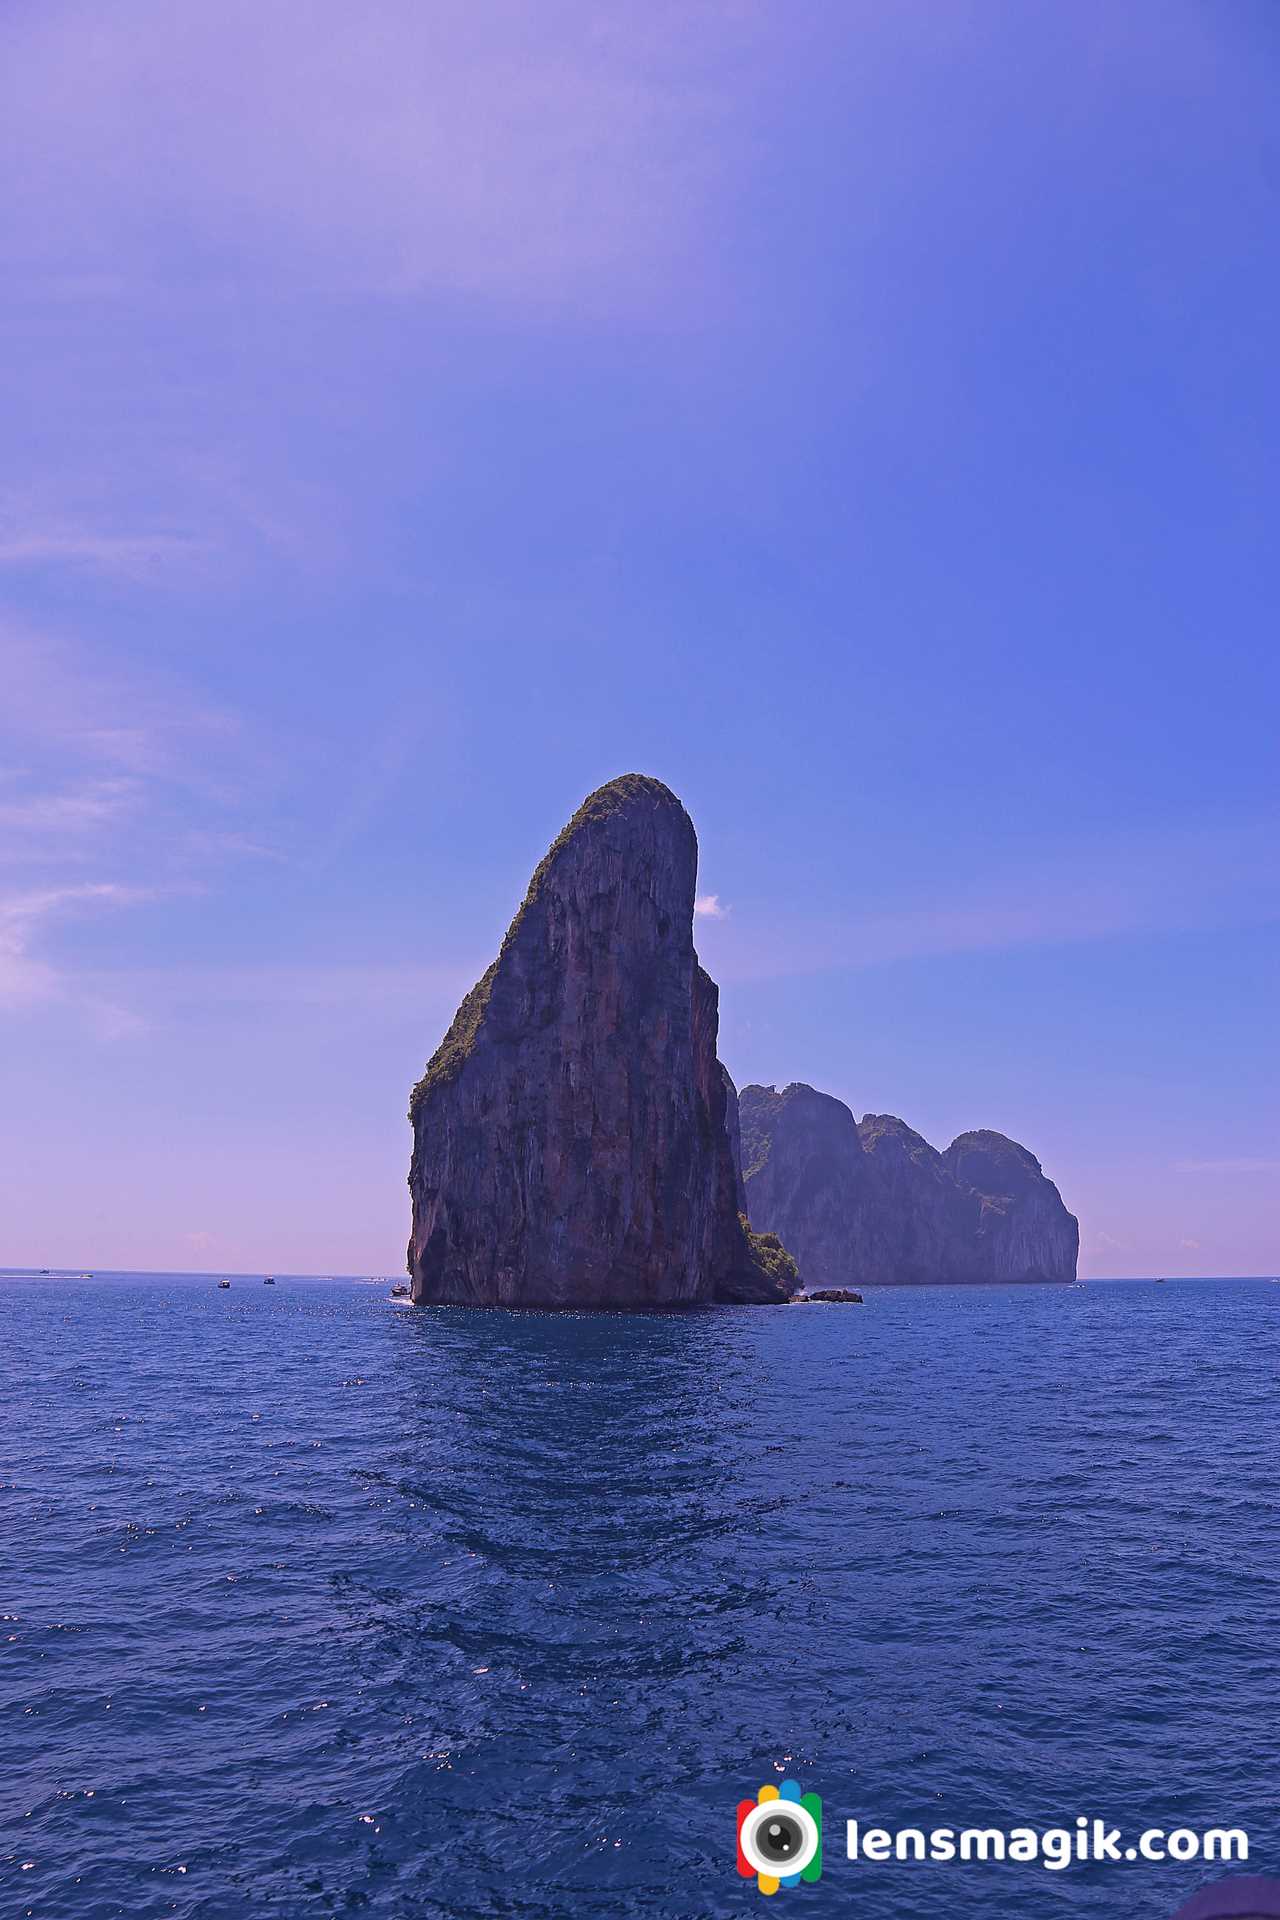 Best Island In Thailand